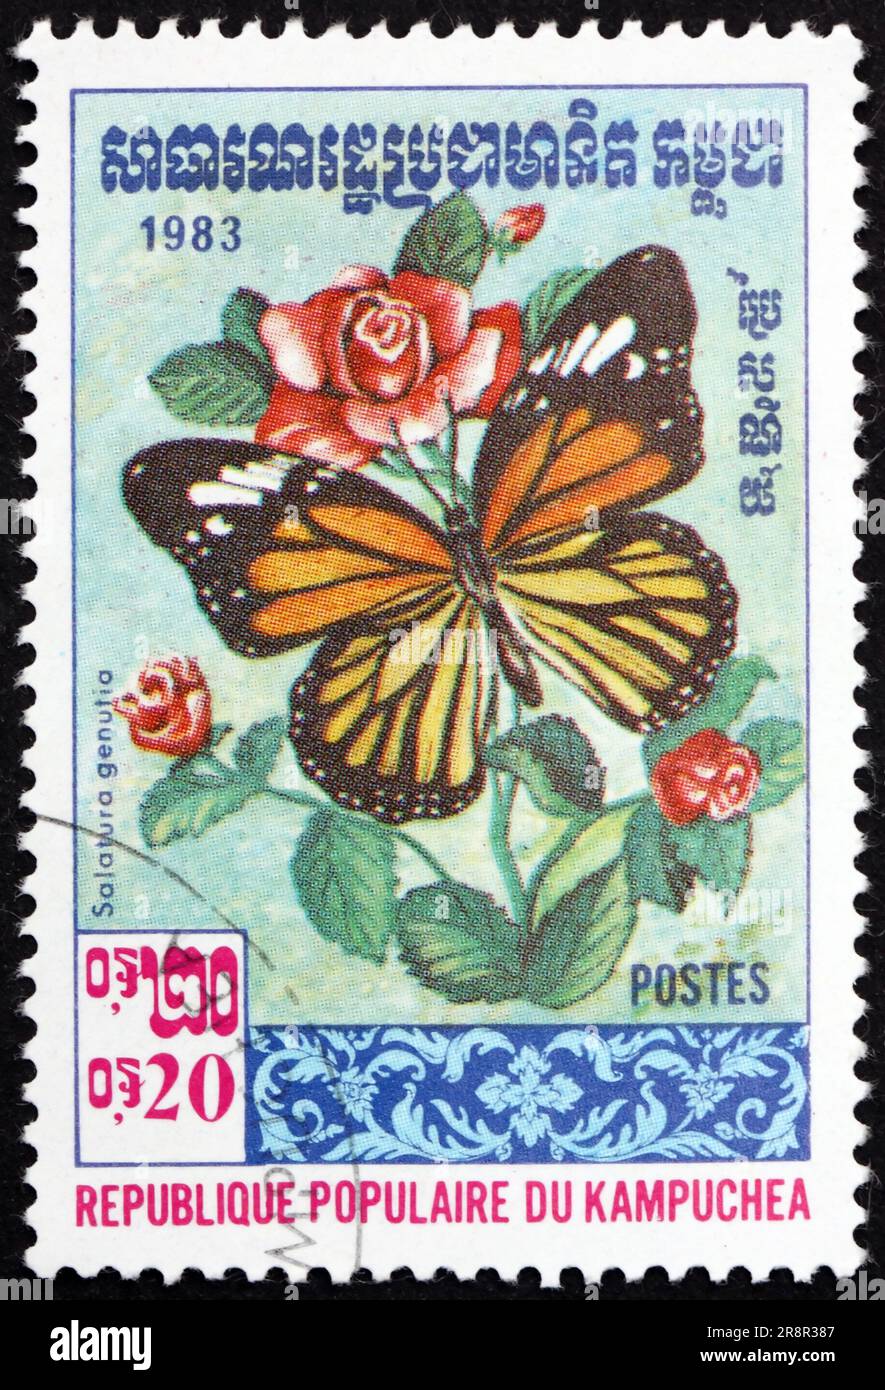 CAMBODGE - VERS 1983: Un timbre imprimé au Cambodge montre le tigre commun, salatura genutia, est l'un des papillons communs de l'Inde, vers 1983 Banque D'Images